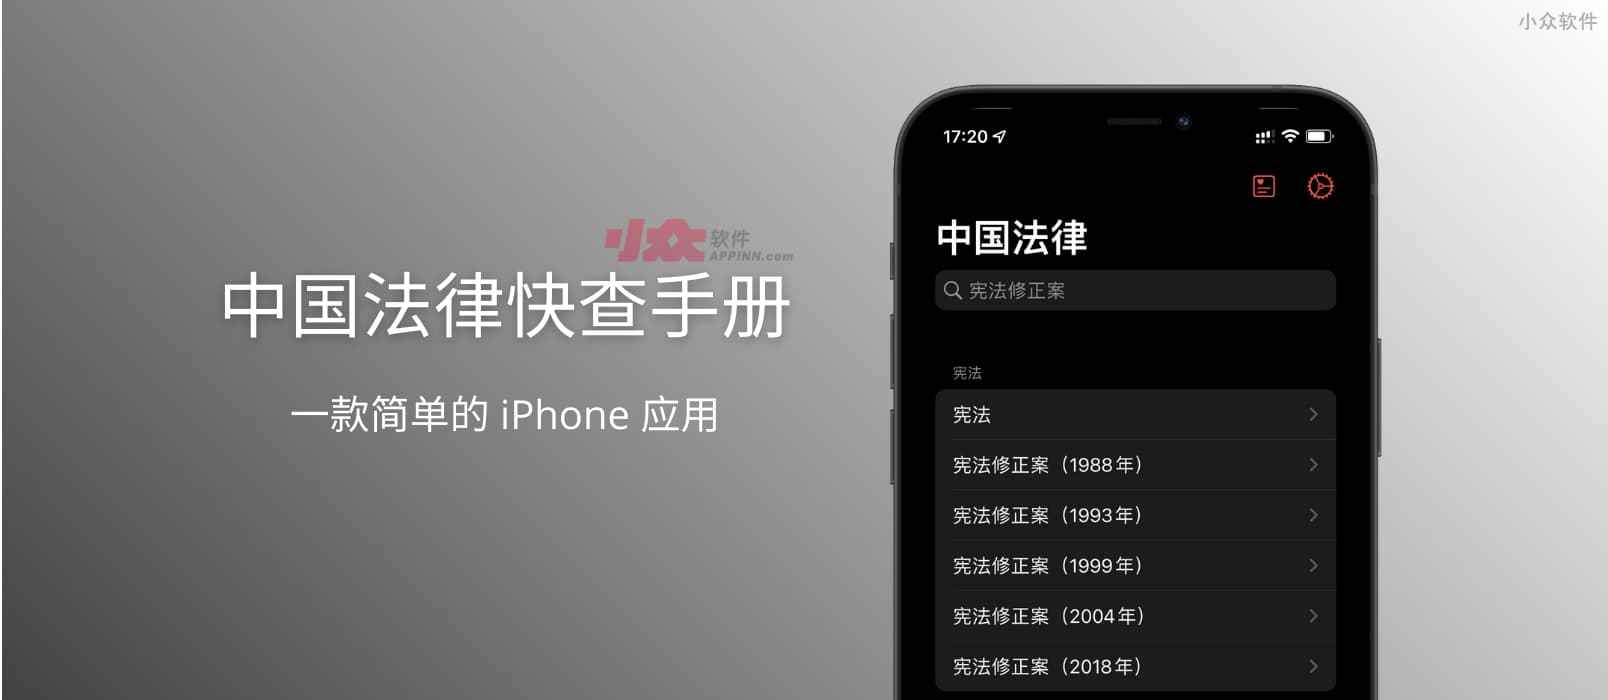 中国法律快查手册 – 一款简单的 iPhone/macOS 应用